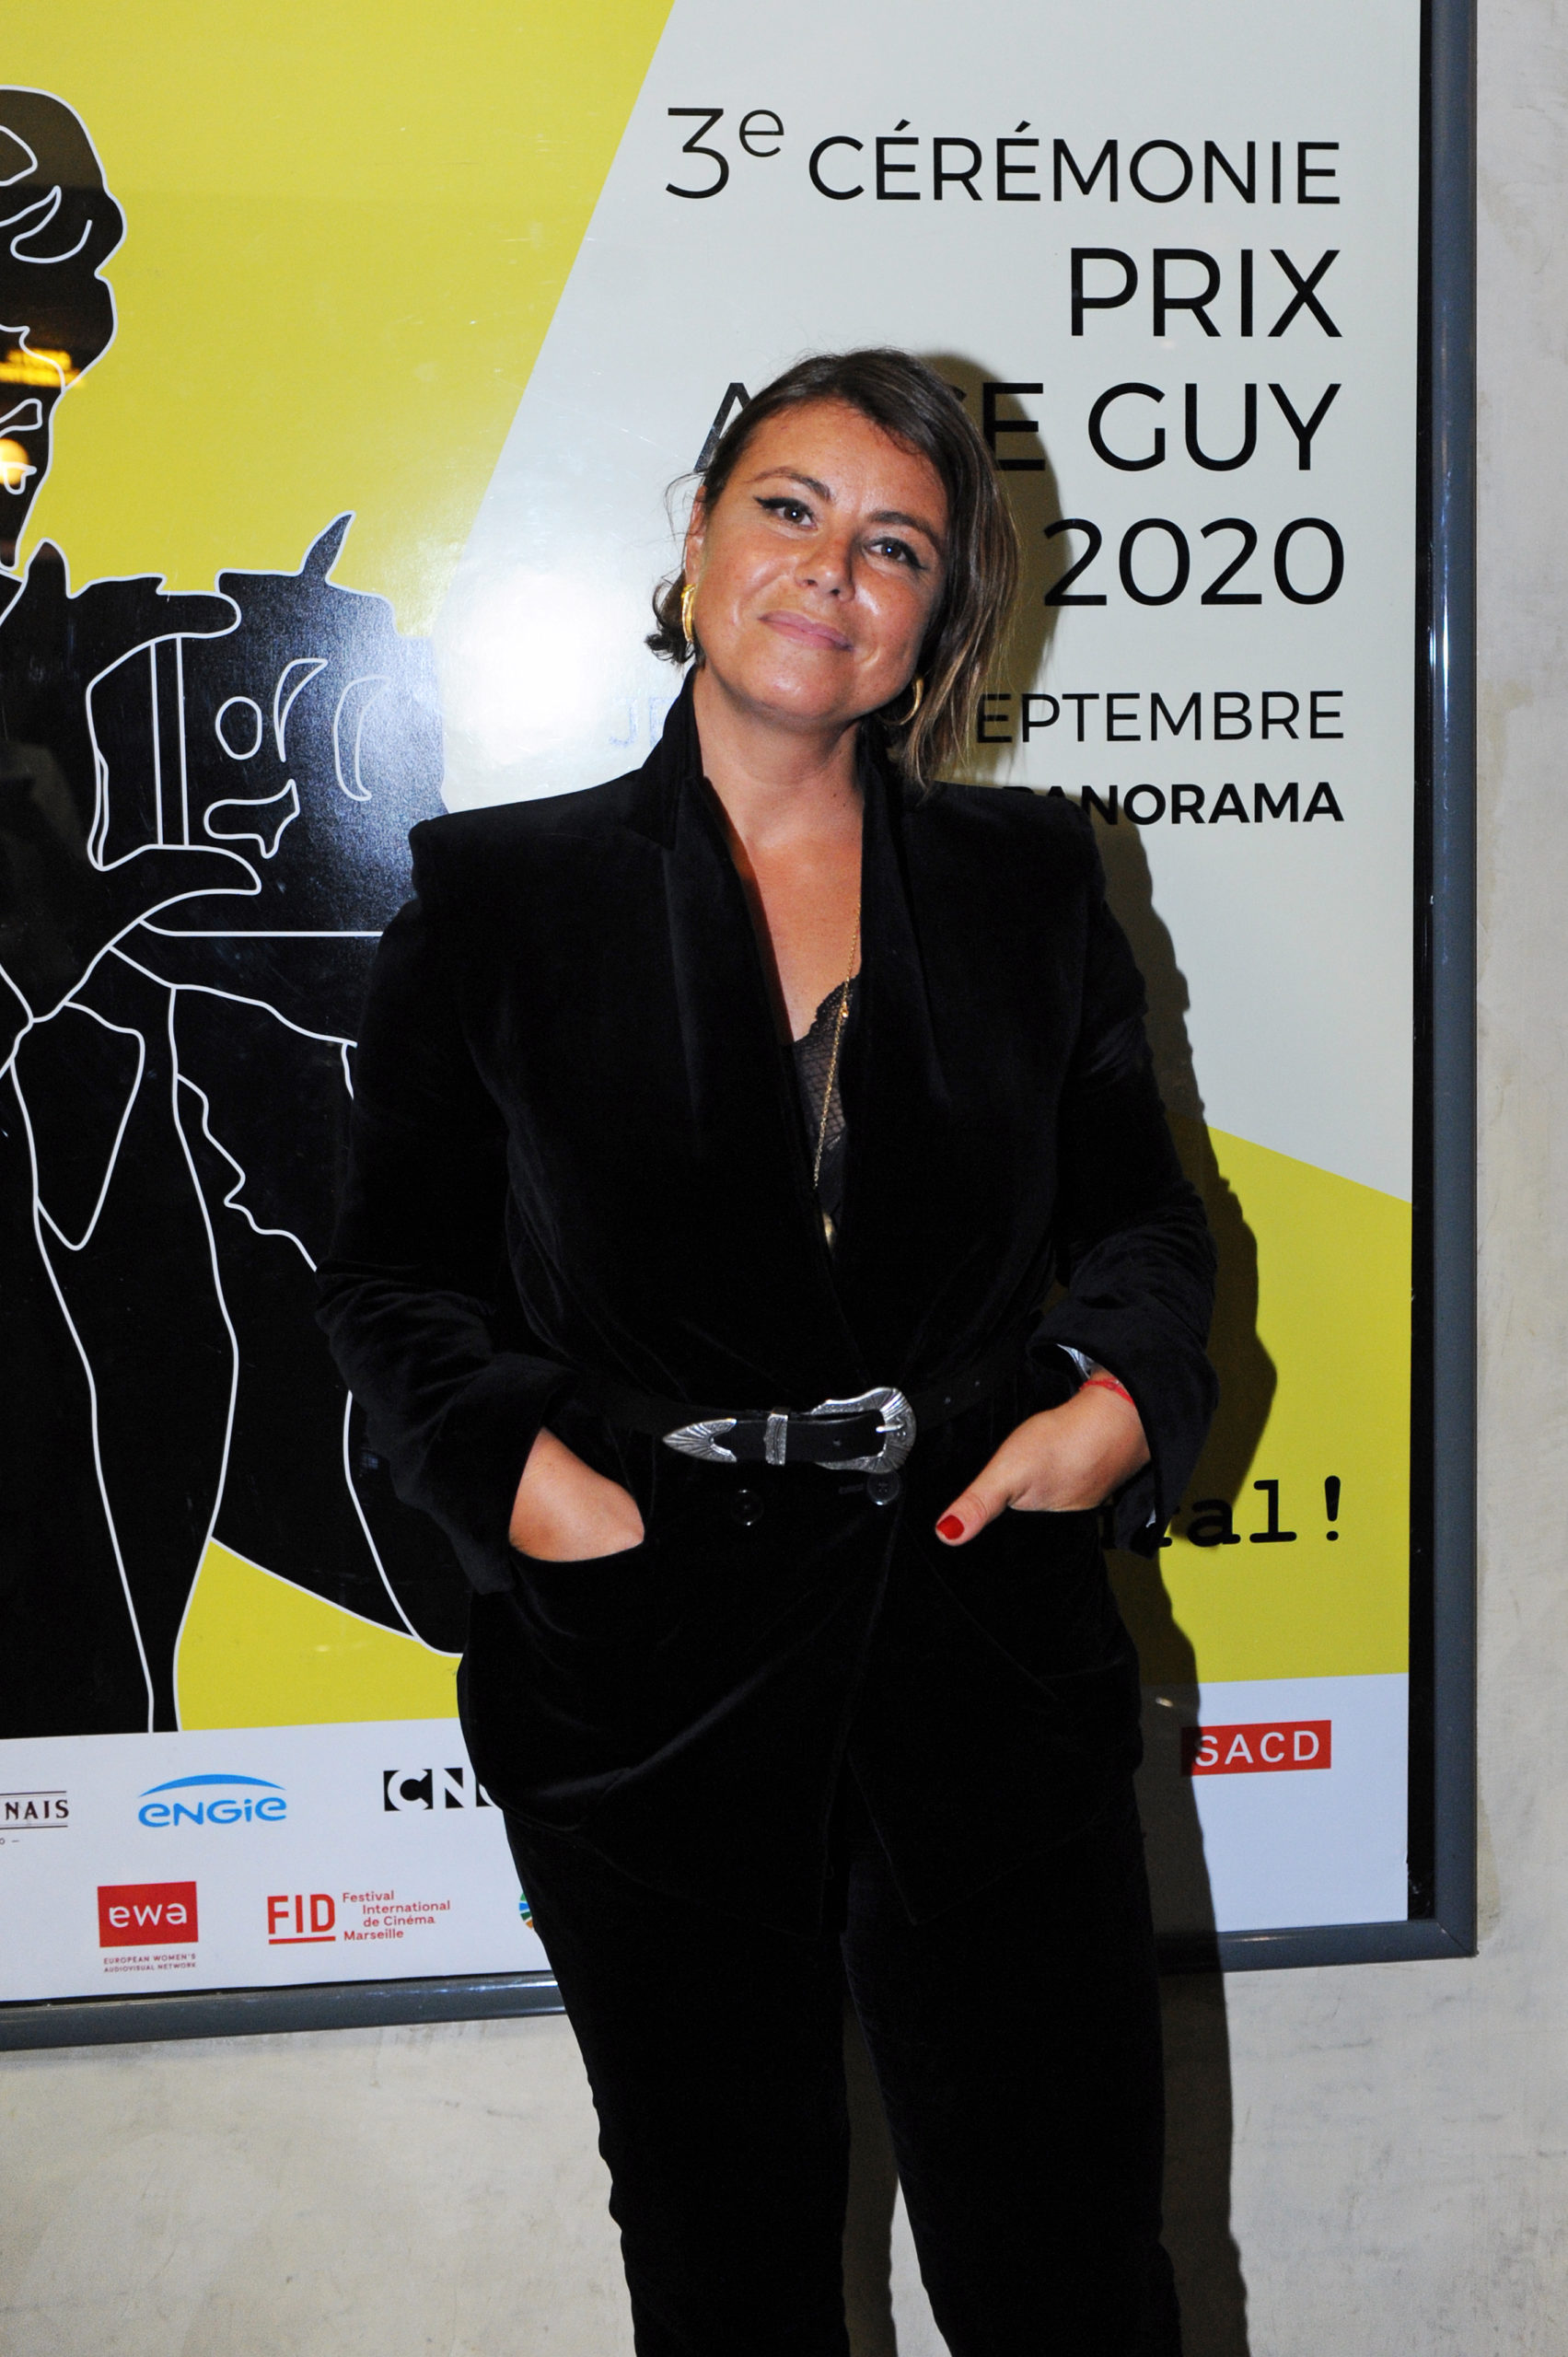 L'interview de Mounia Meddour, lauréate 2020- prixaliceguy.com